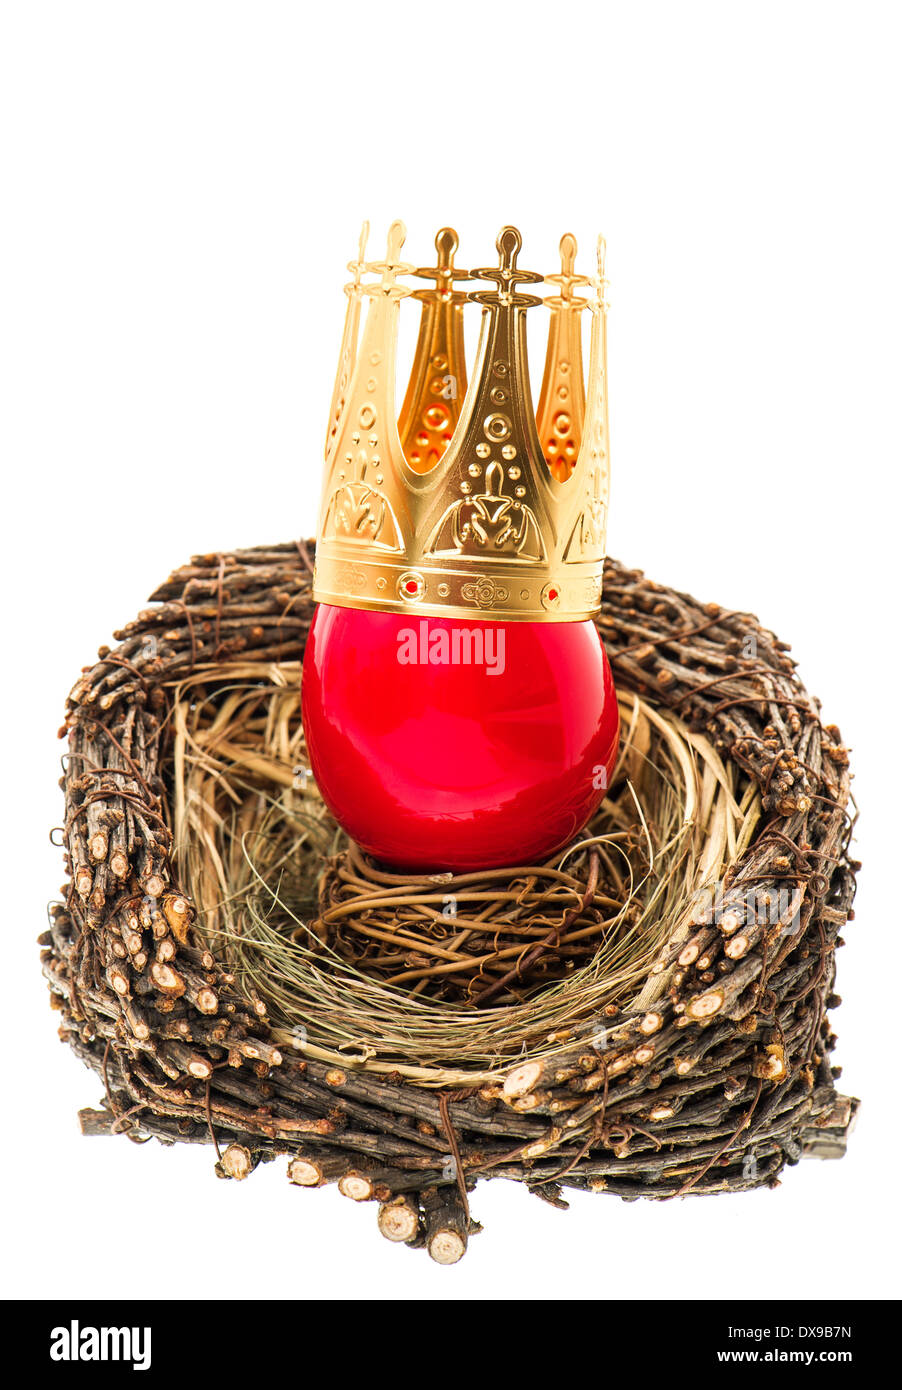 Oeuf de Pâques rouge avec couronne d'or, la décoration en nid en bois isolé sur fond blanc Banque D'Images